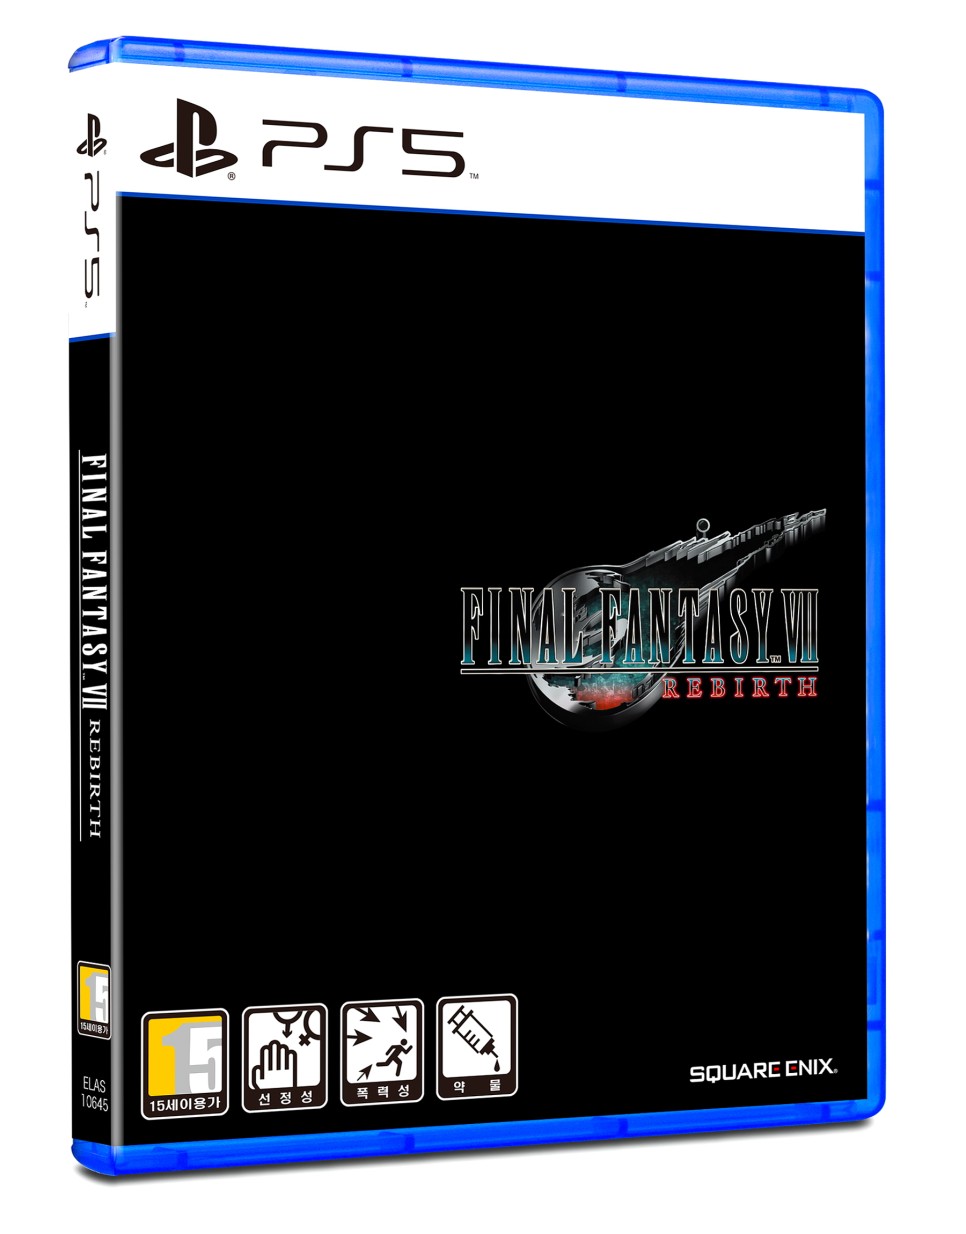 PS5 파이널 판타지7 리버스 출시 소식 및 예약 판매 특전 정보